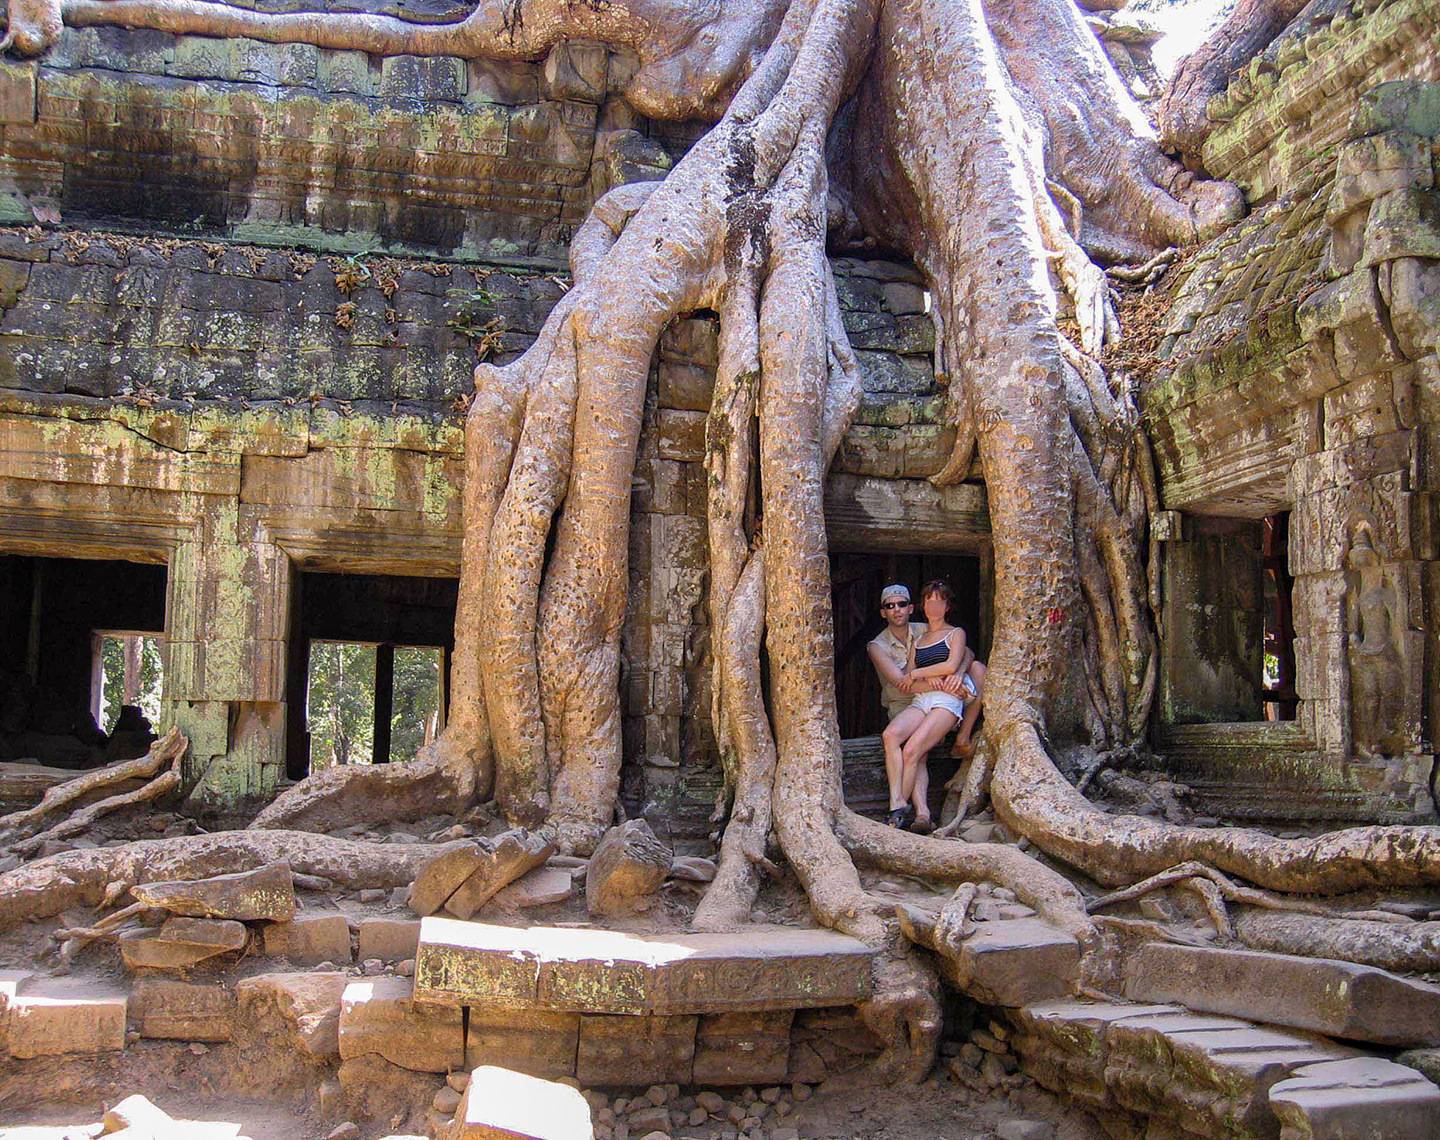 Храм ангкор ват в камбодже, как добраться, достопримечательности